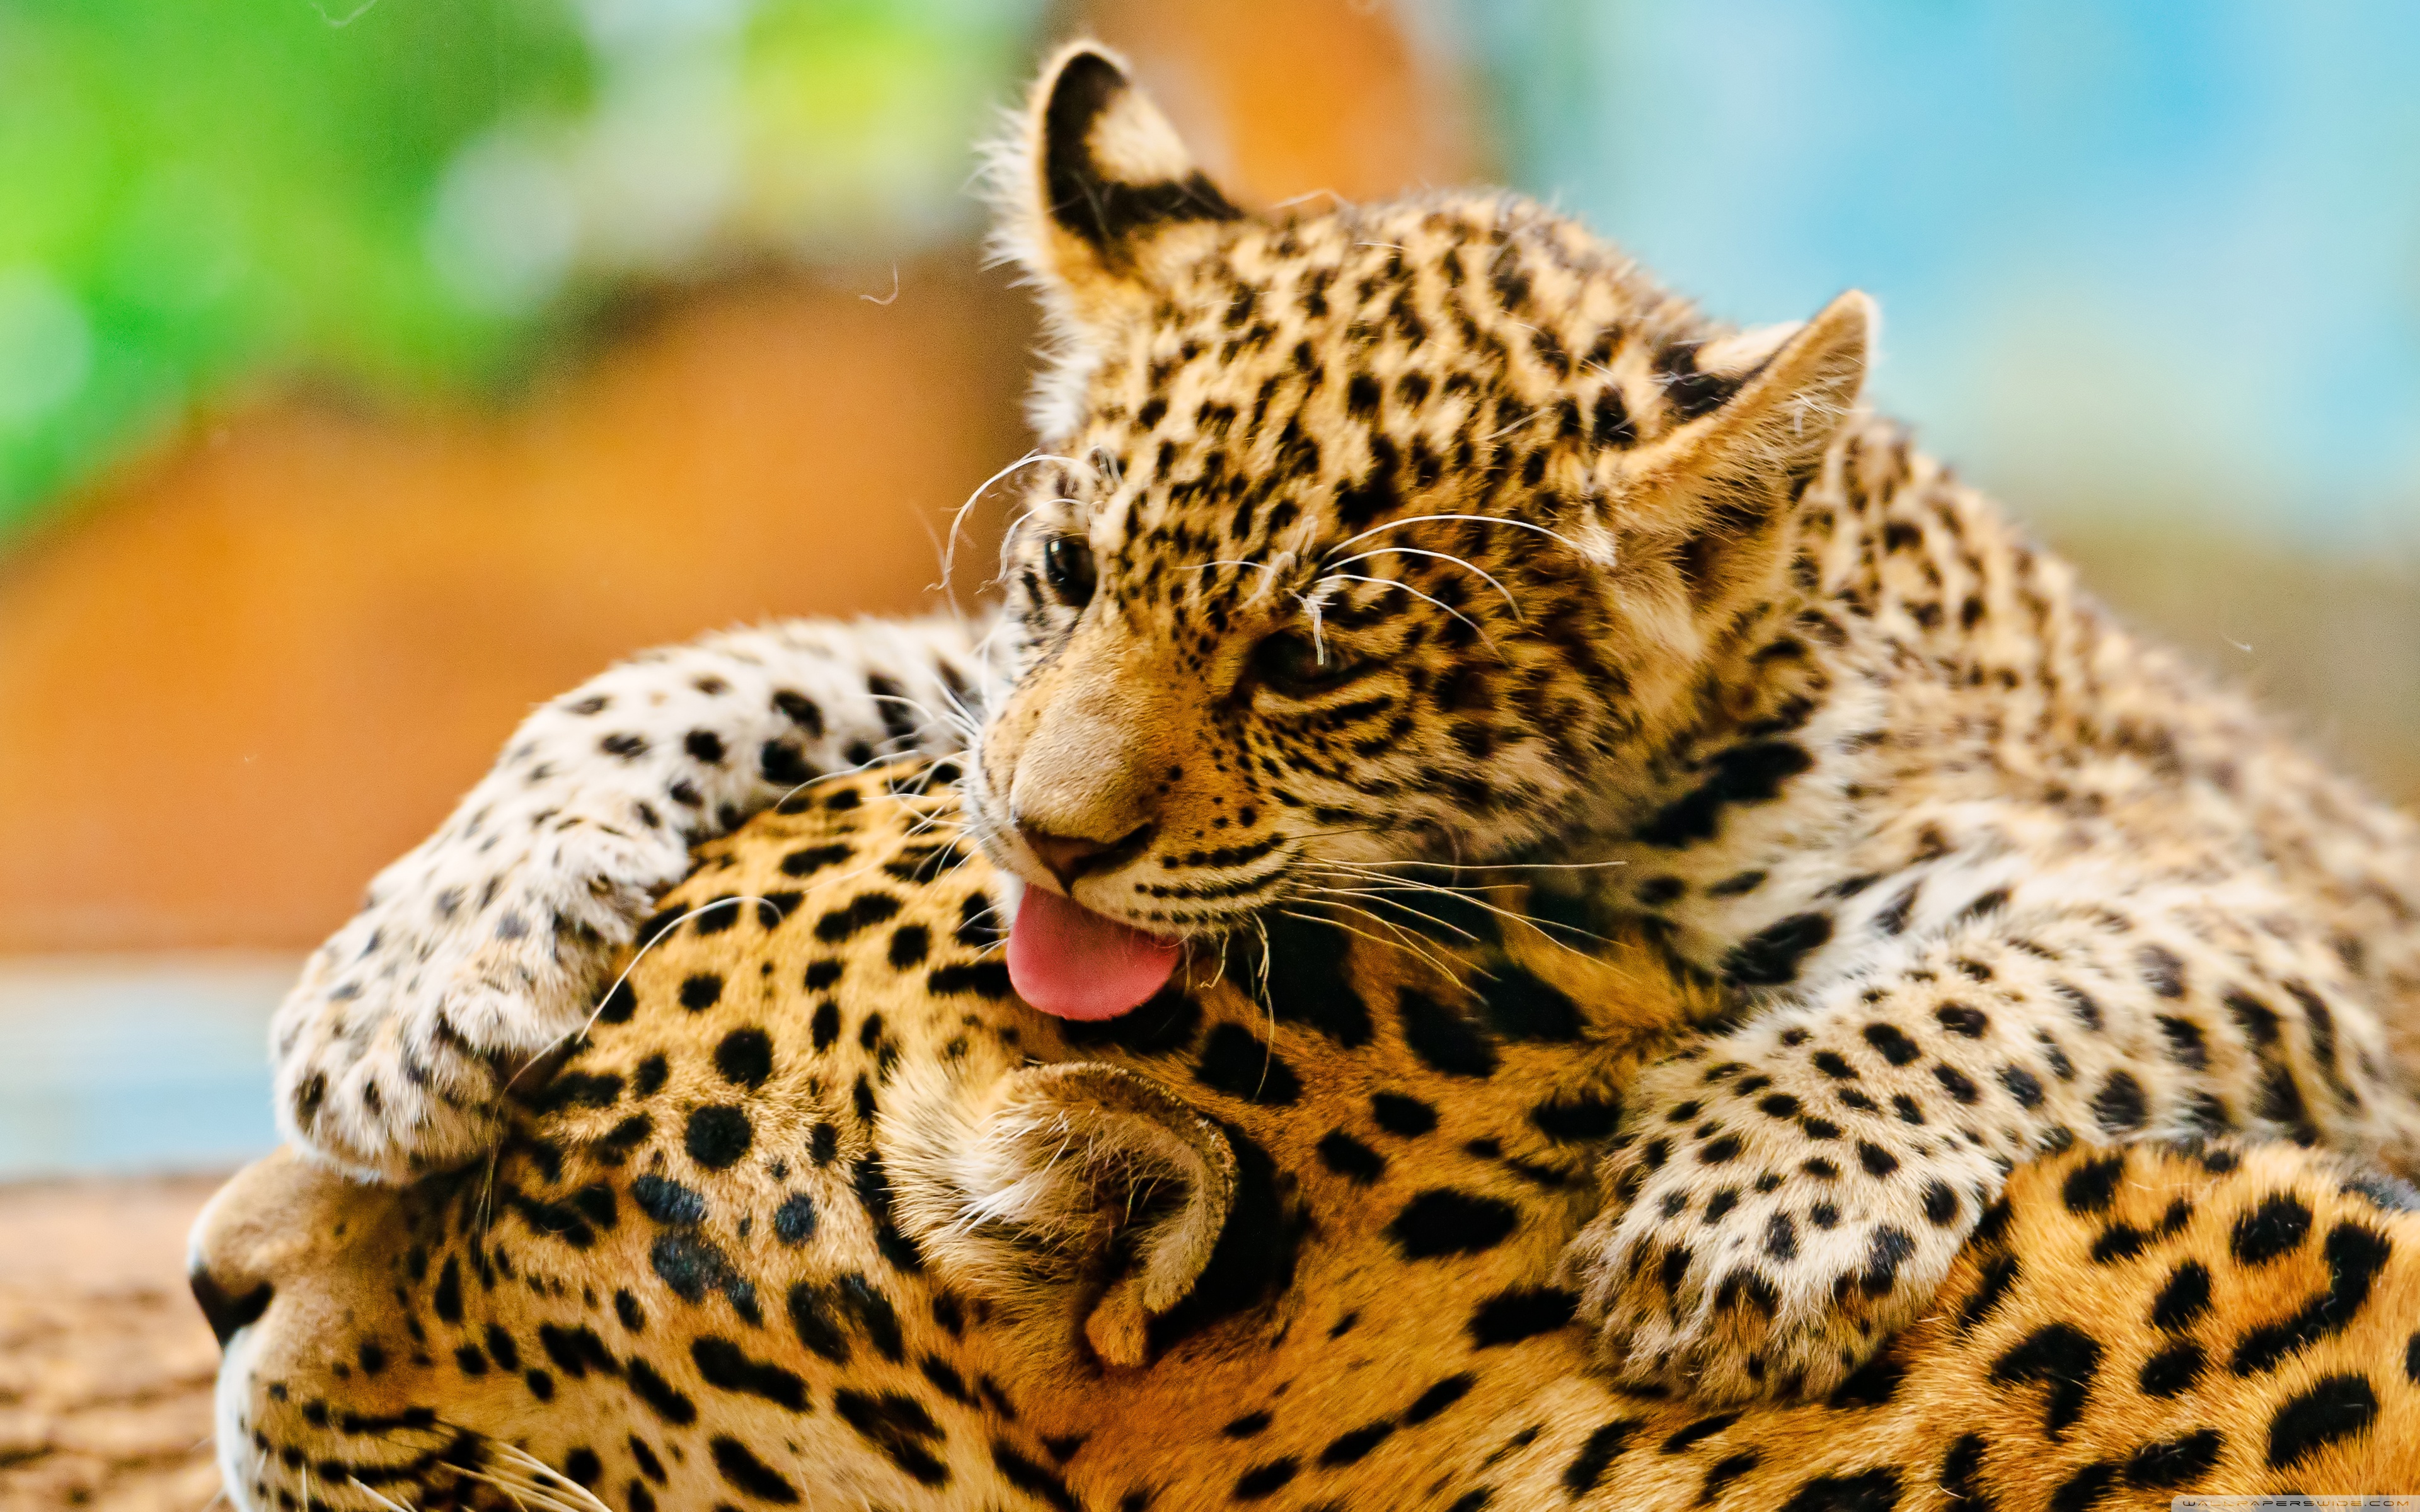 Animals images. Ягуар и леопард. Джагуар леопард. Ягуар животное. Маленький леопарденок.